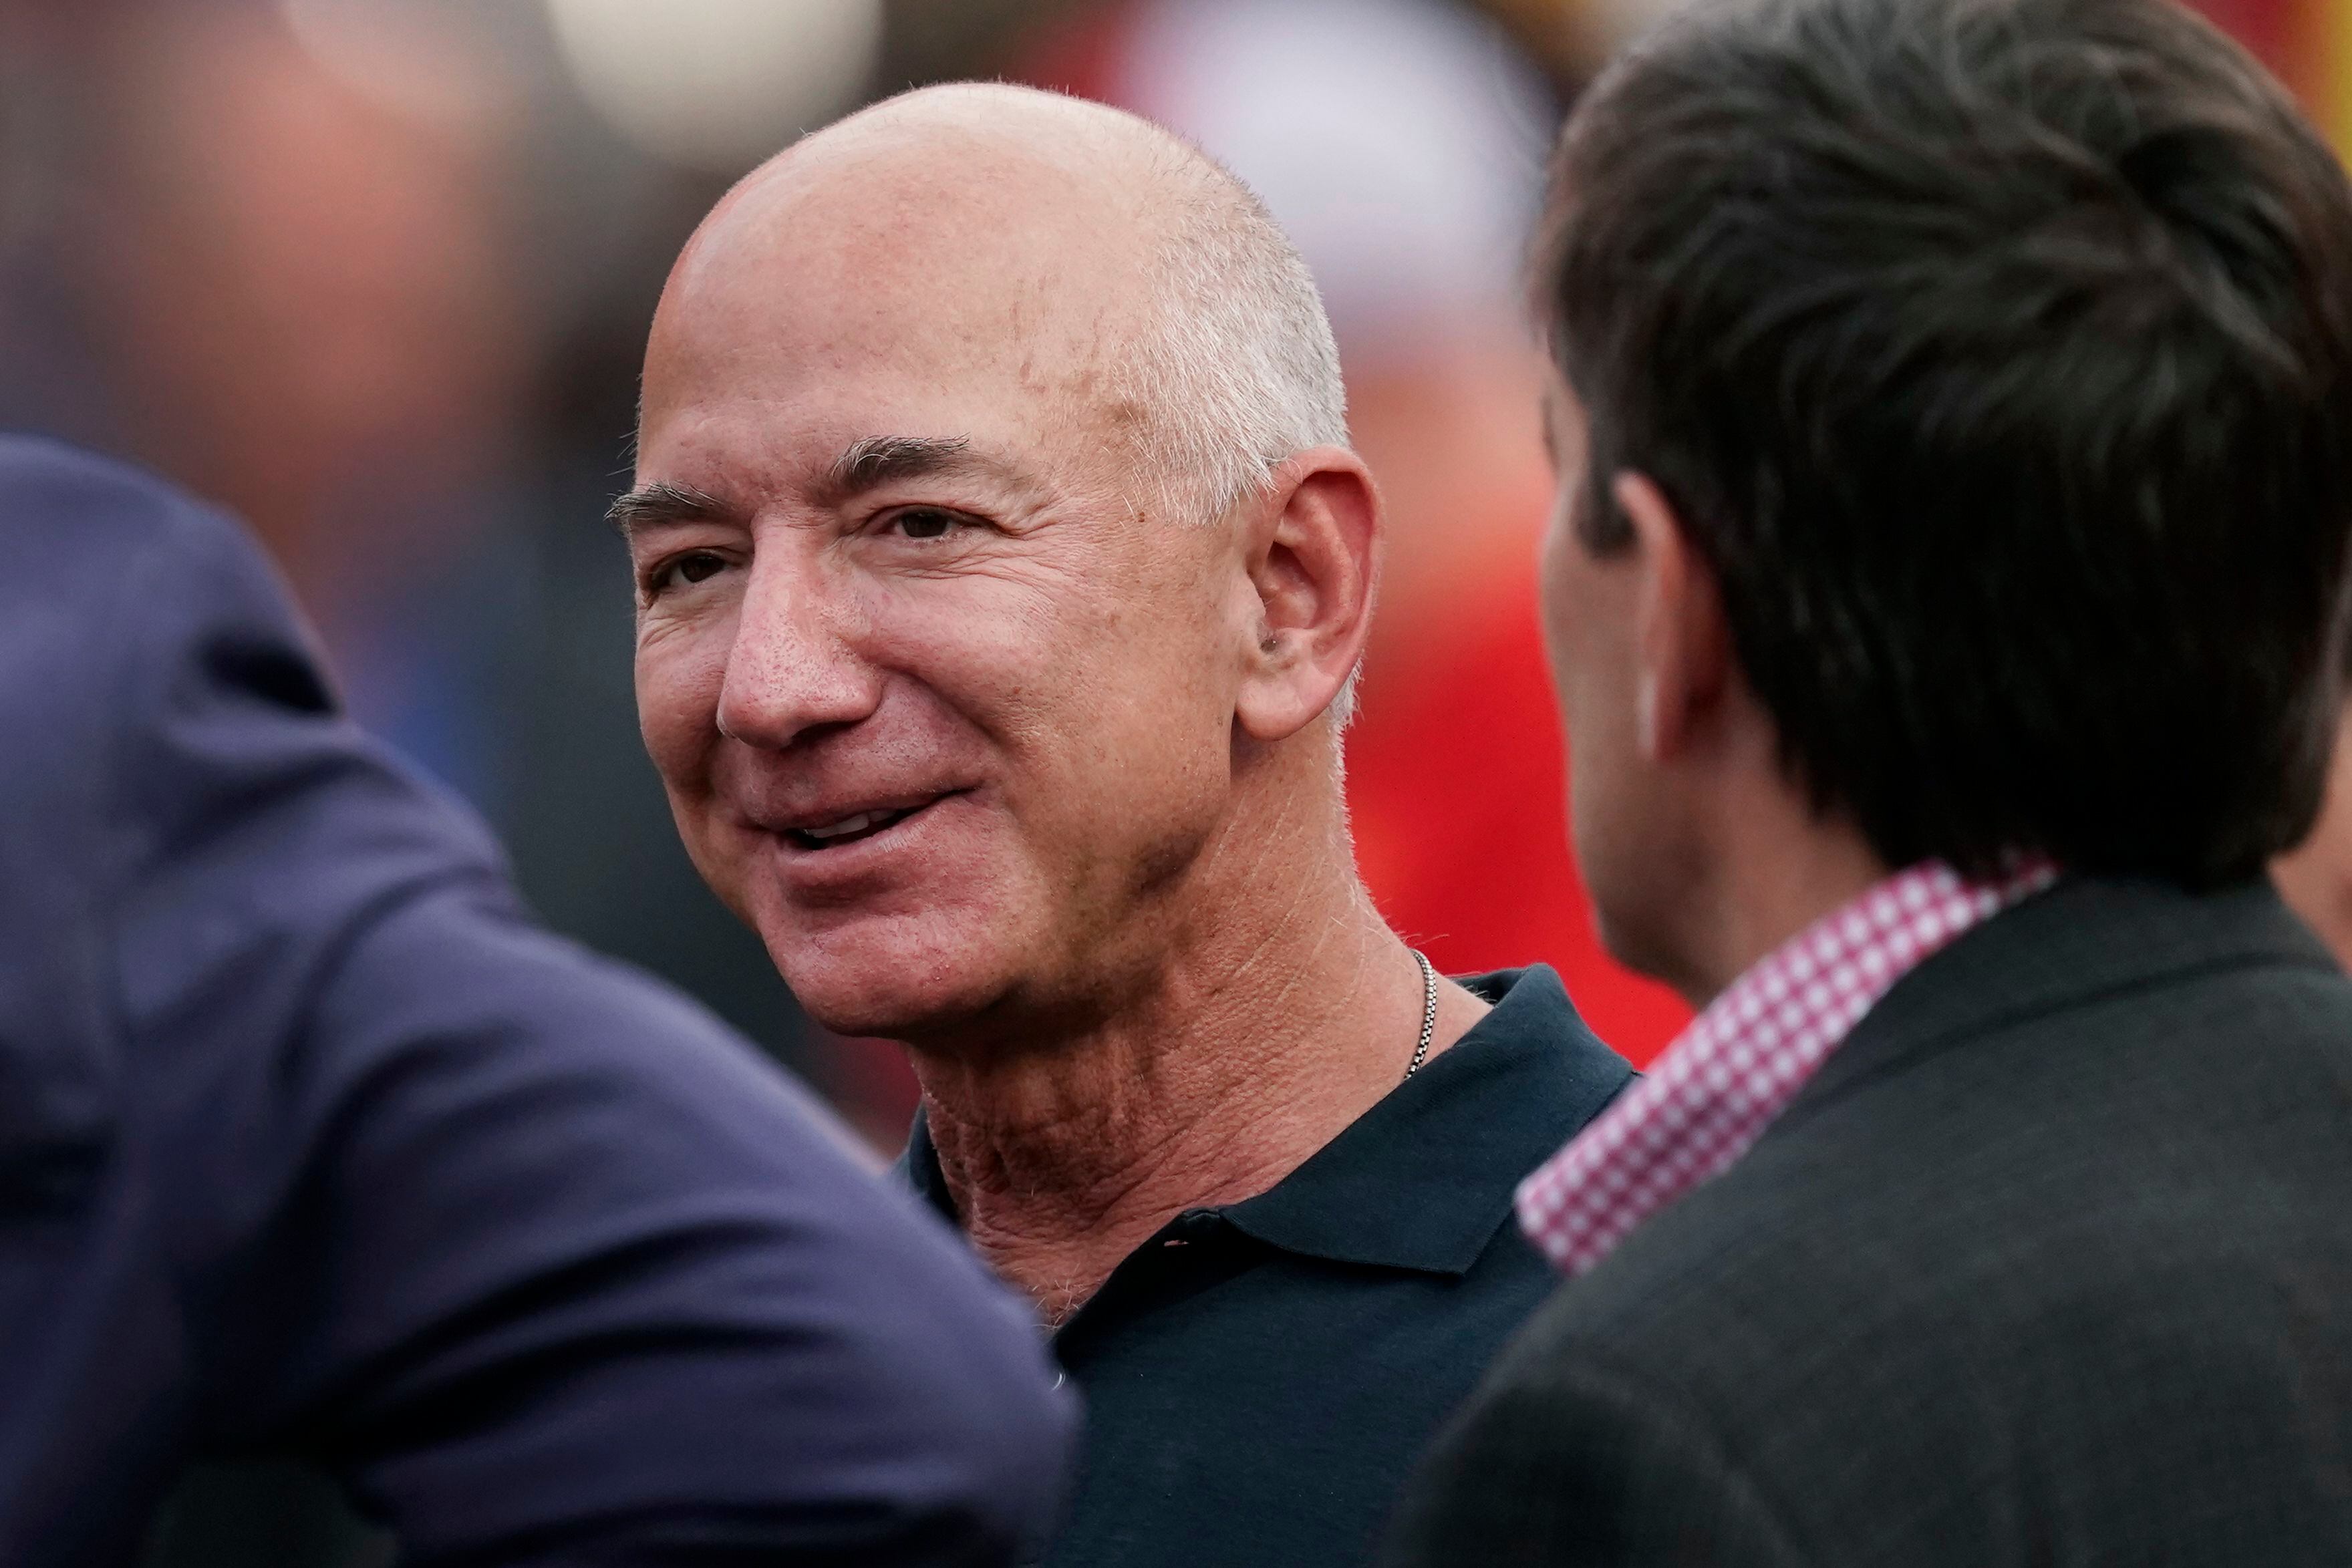 El fundador de Amazon, Jeff Bezos, superó a Elon Musk en el ranking de riqueza. (AP Foto/Charlie Riedel, Archivo)